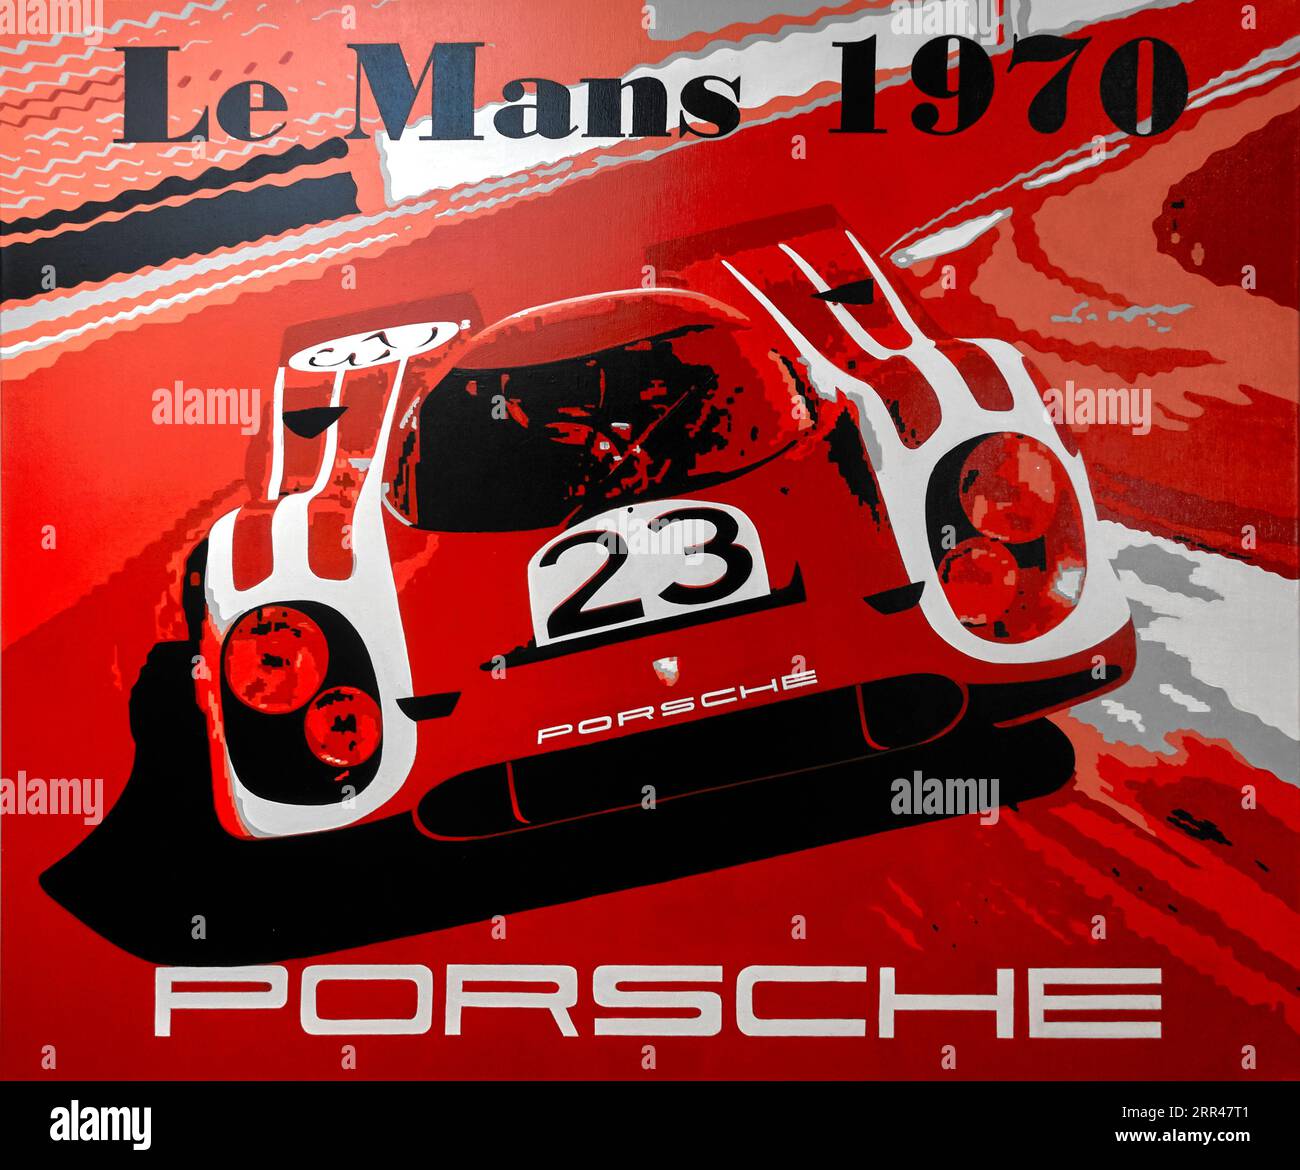 Le Mans Porsche Poster racing car 1970 Stock Photo